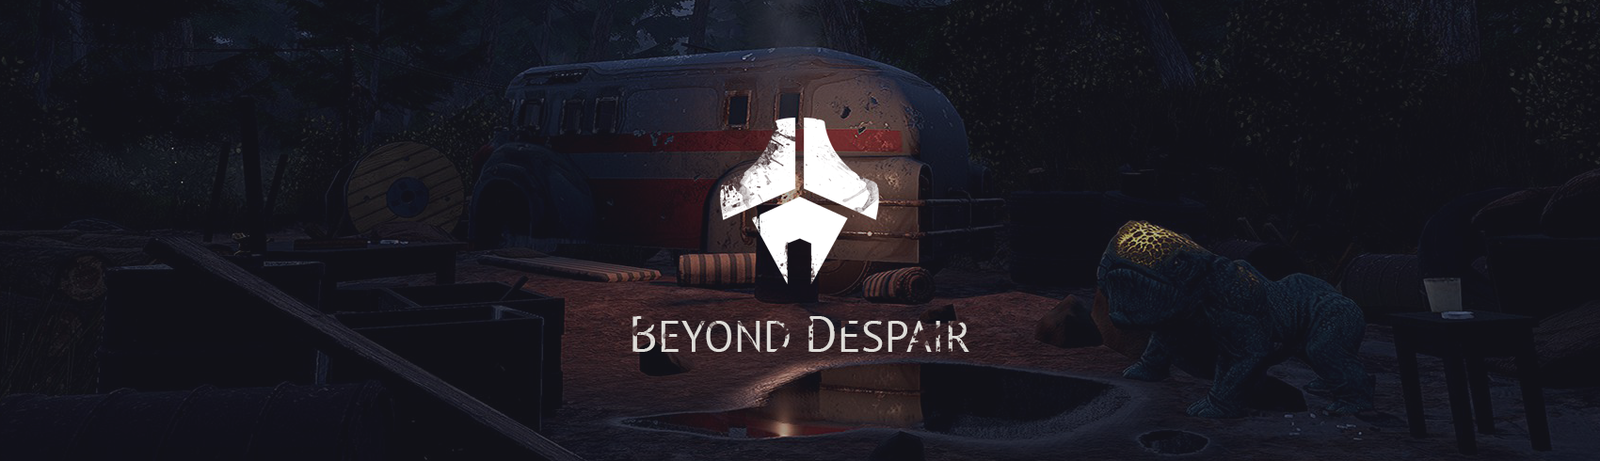 Beyond Despair - new screenshots - My, , , , Horror, Survival, Gamedev, Games, Computer games, Longpost